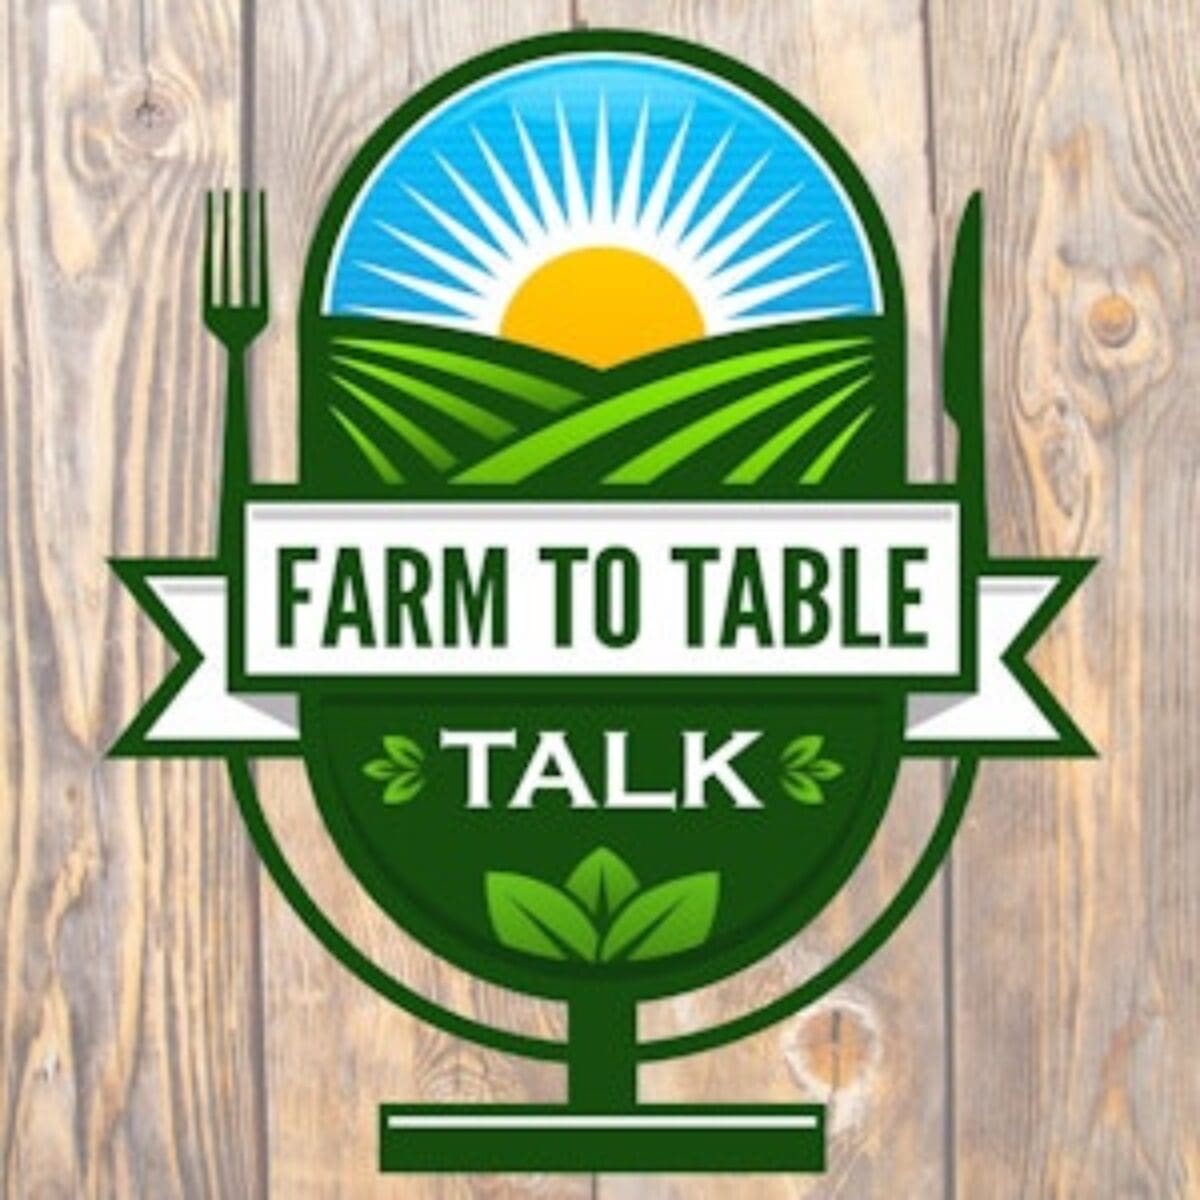 Farm to table talk podcast